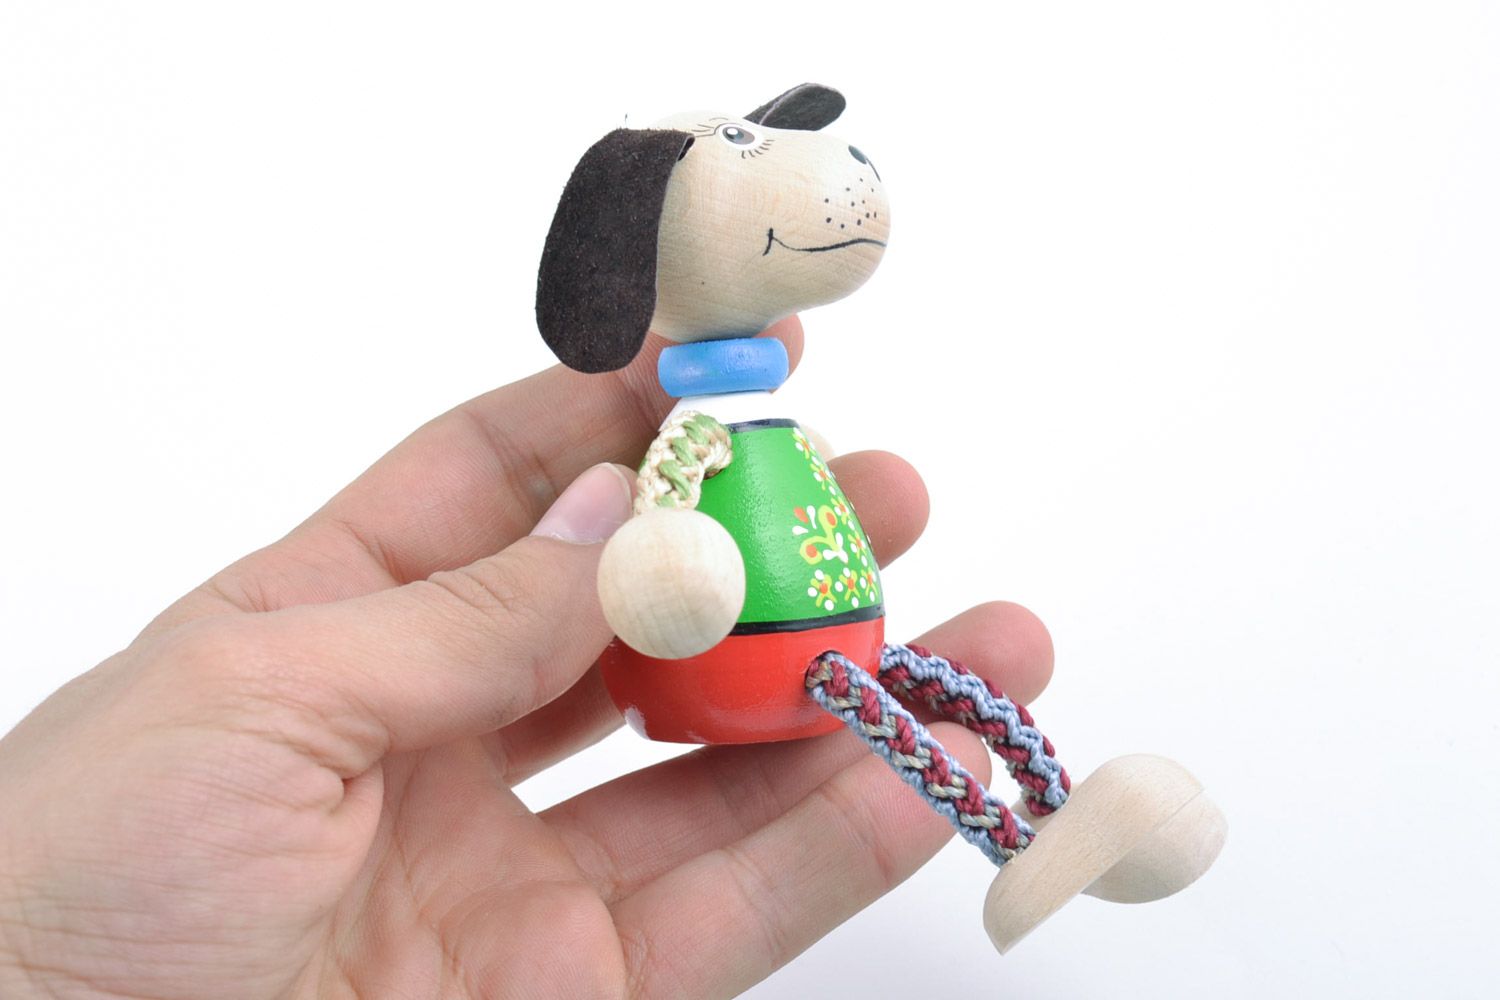 Designer Öko bemaltes kleines interessantes Holz Spielzeug Hund Handarbeit toll  foto 2